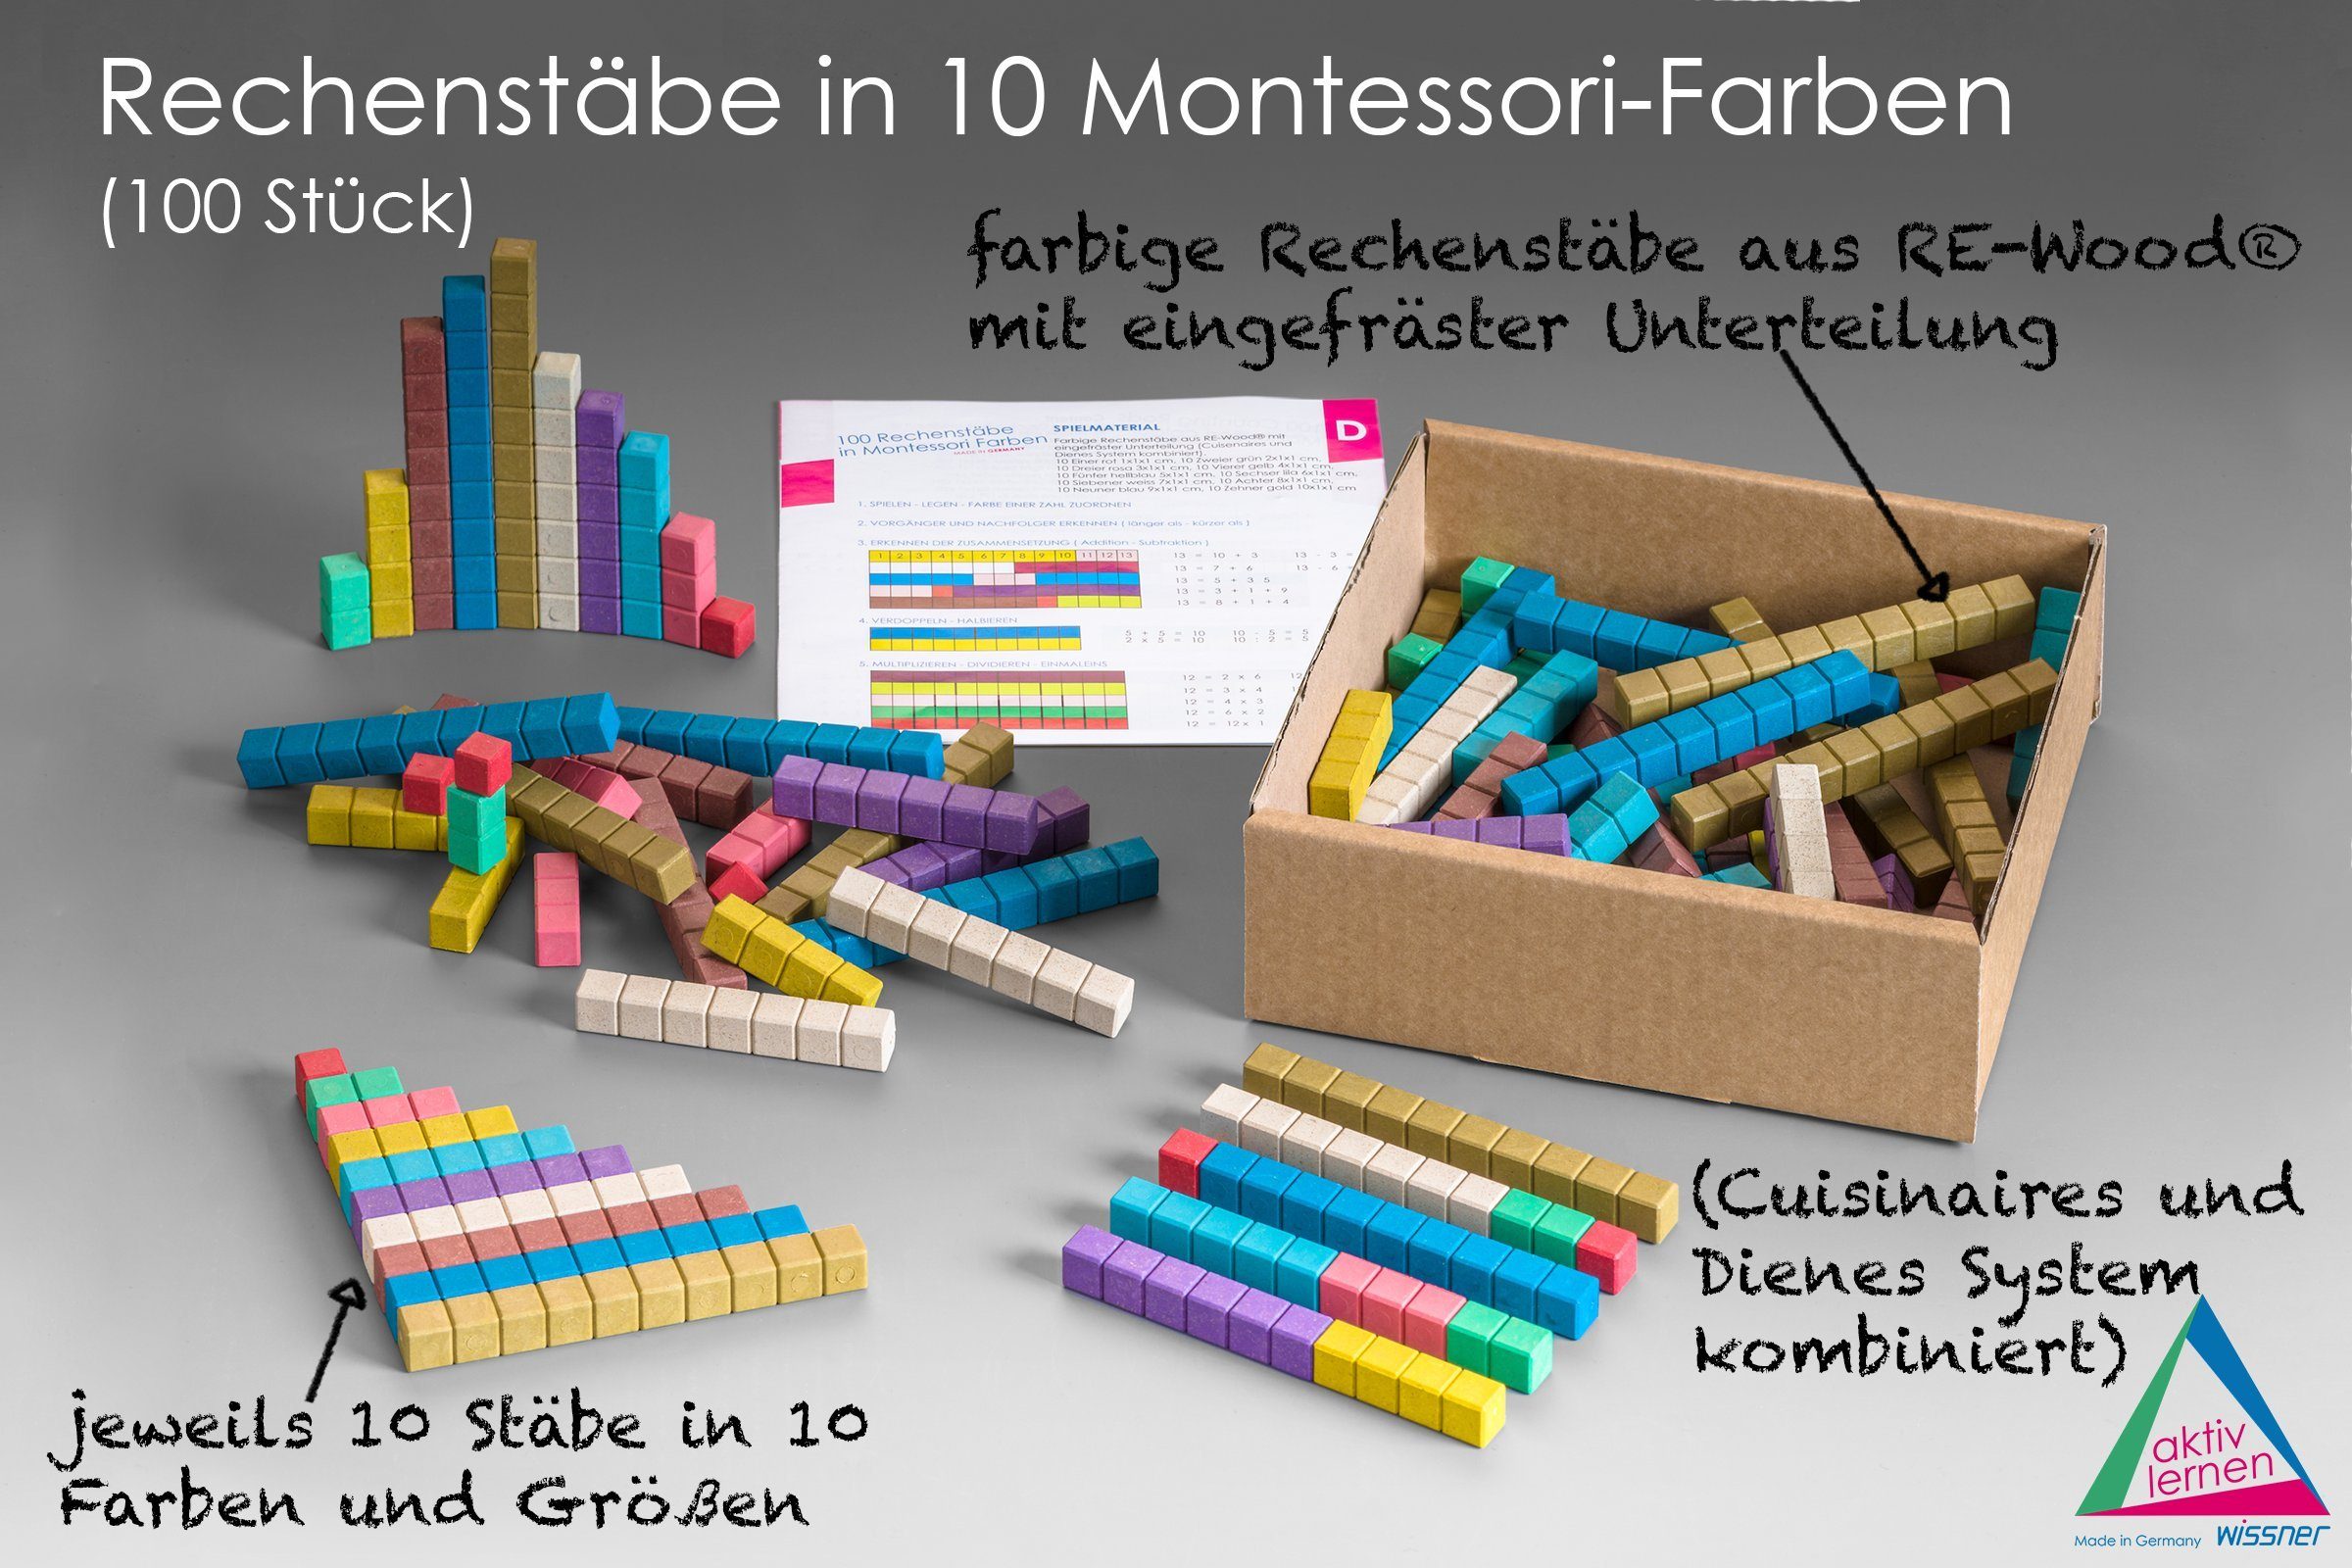 Rechenstäbe (100-St), (100 RE-Wood® Lernspielzeug Wissner® 10 Montessori-Farben RE-Wood® aktiv in lernen Stück),